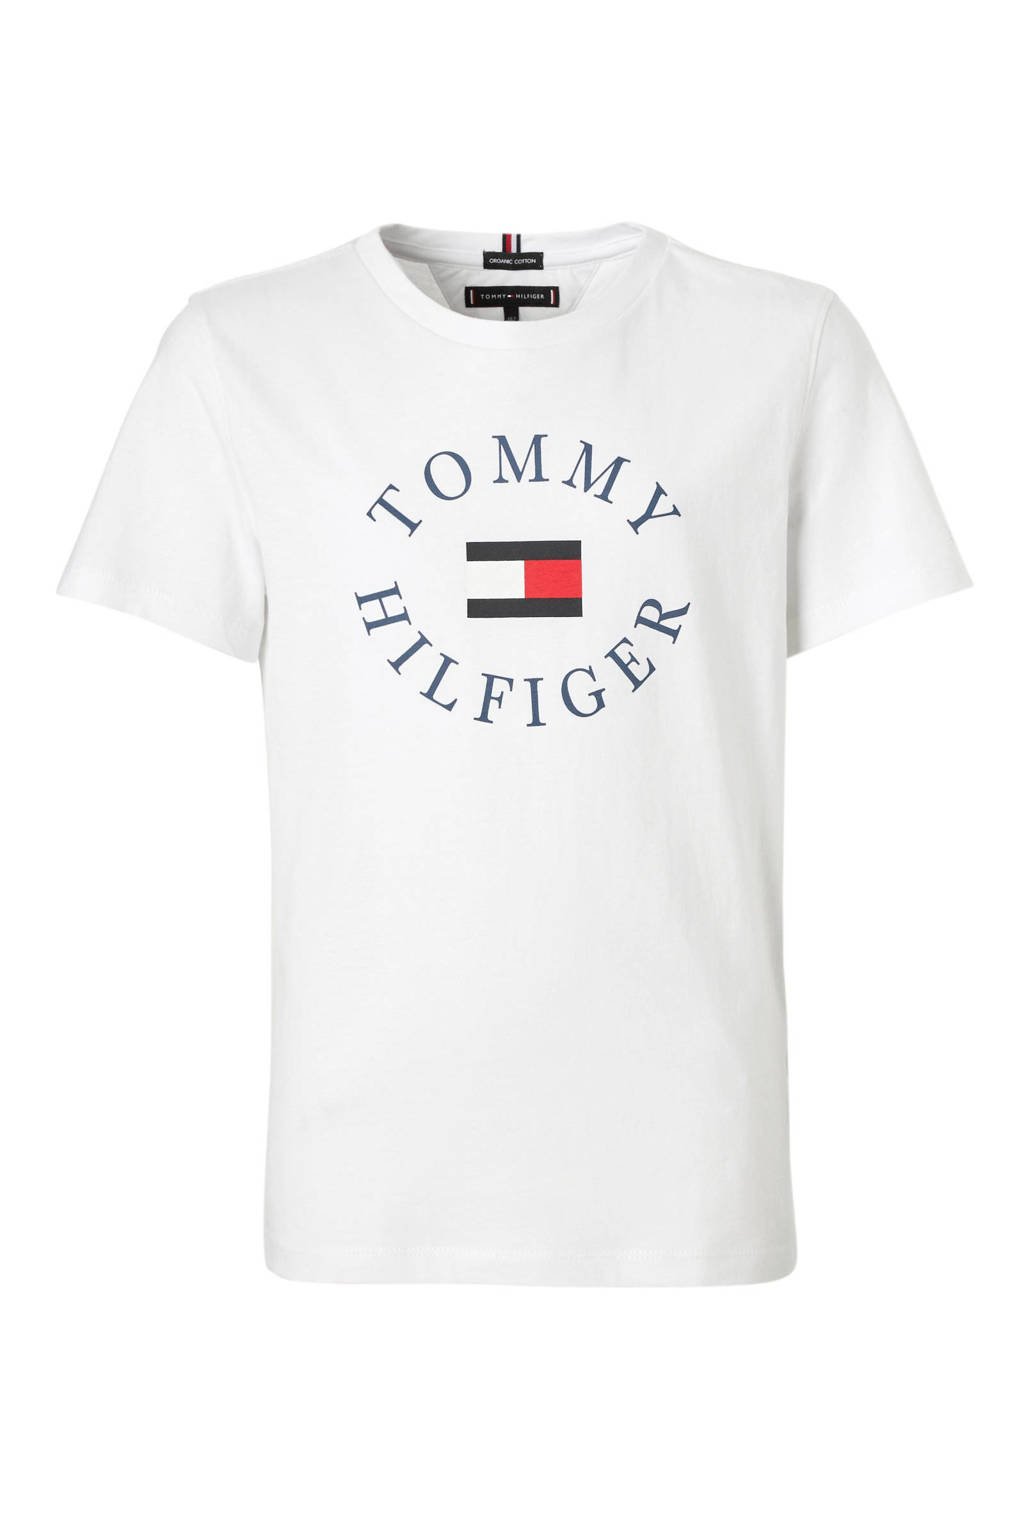 Monografie concept Weiland Tommy Hilfiger T-shirt met logo wit | wehkamp